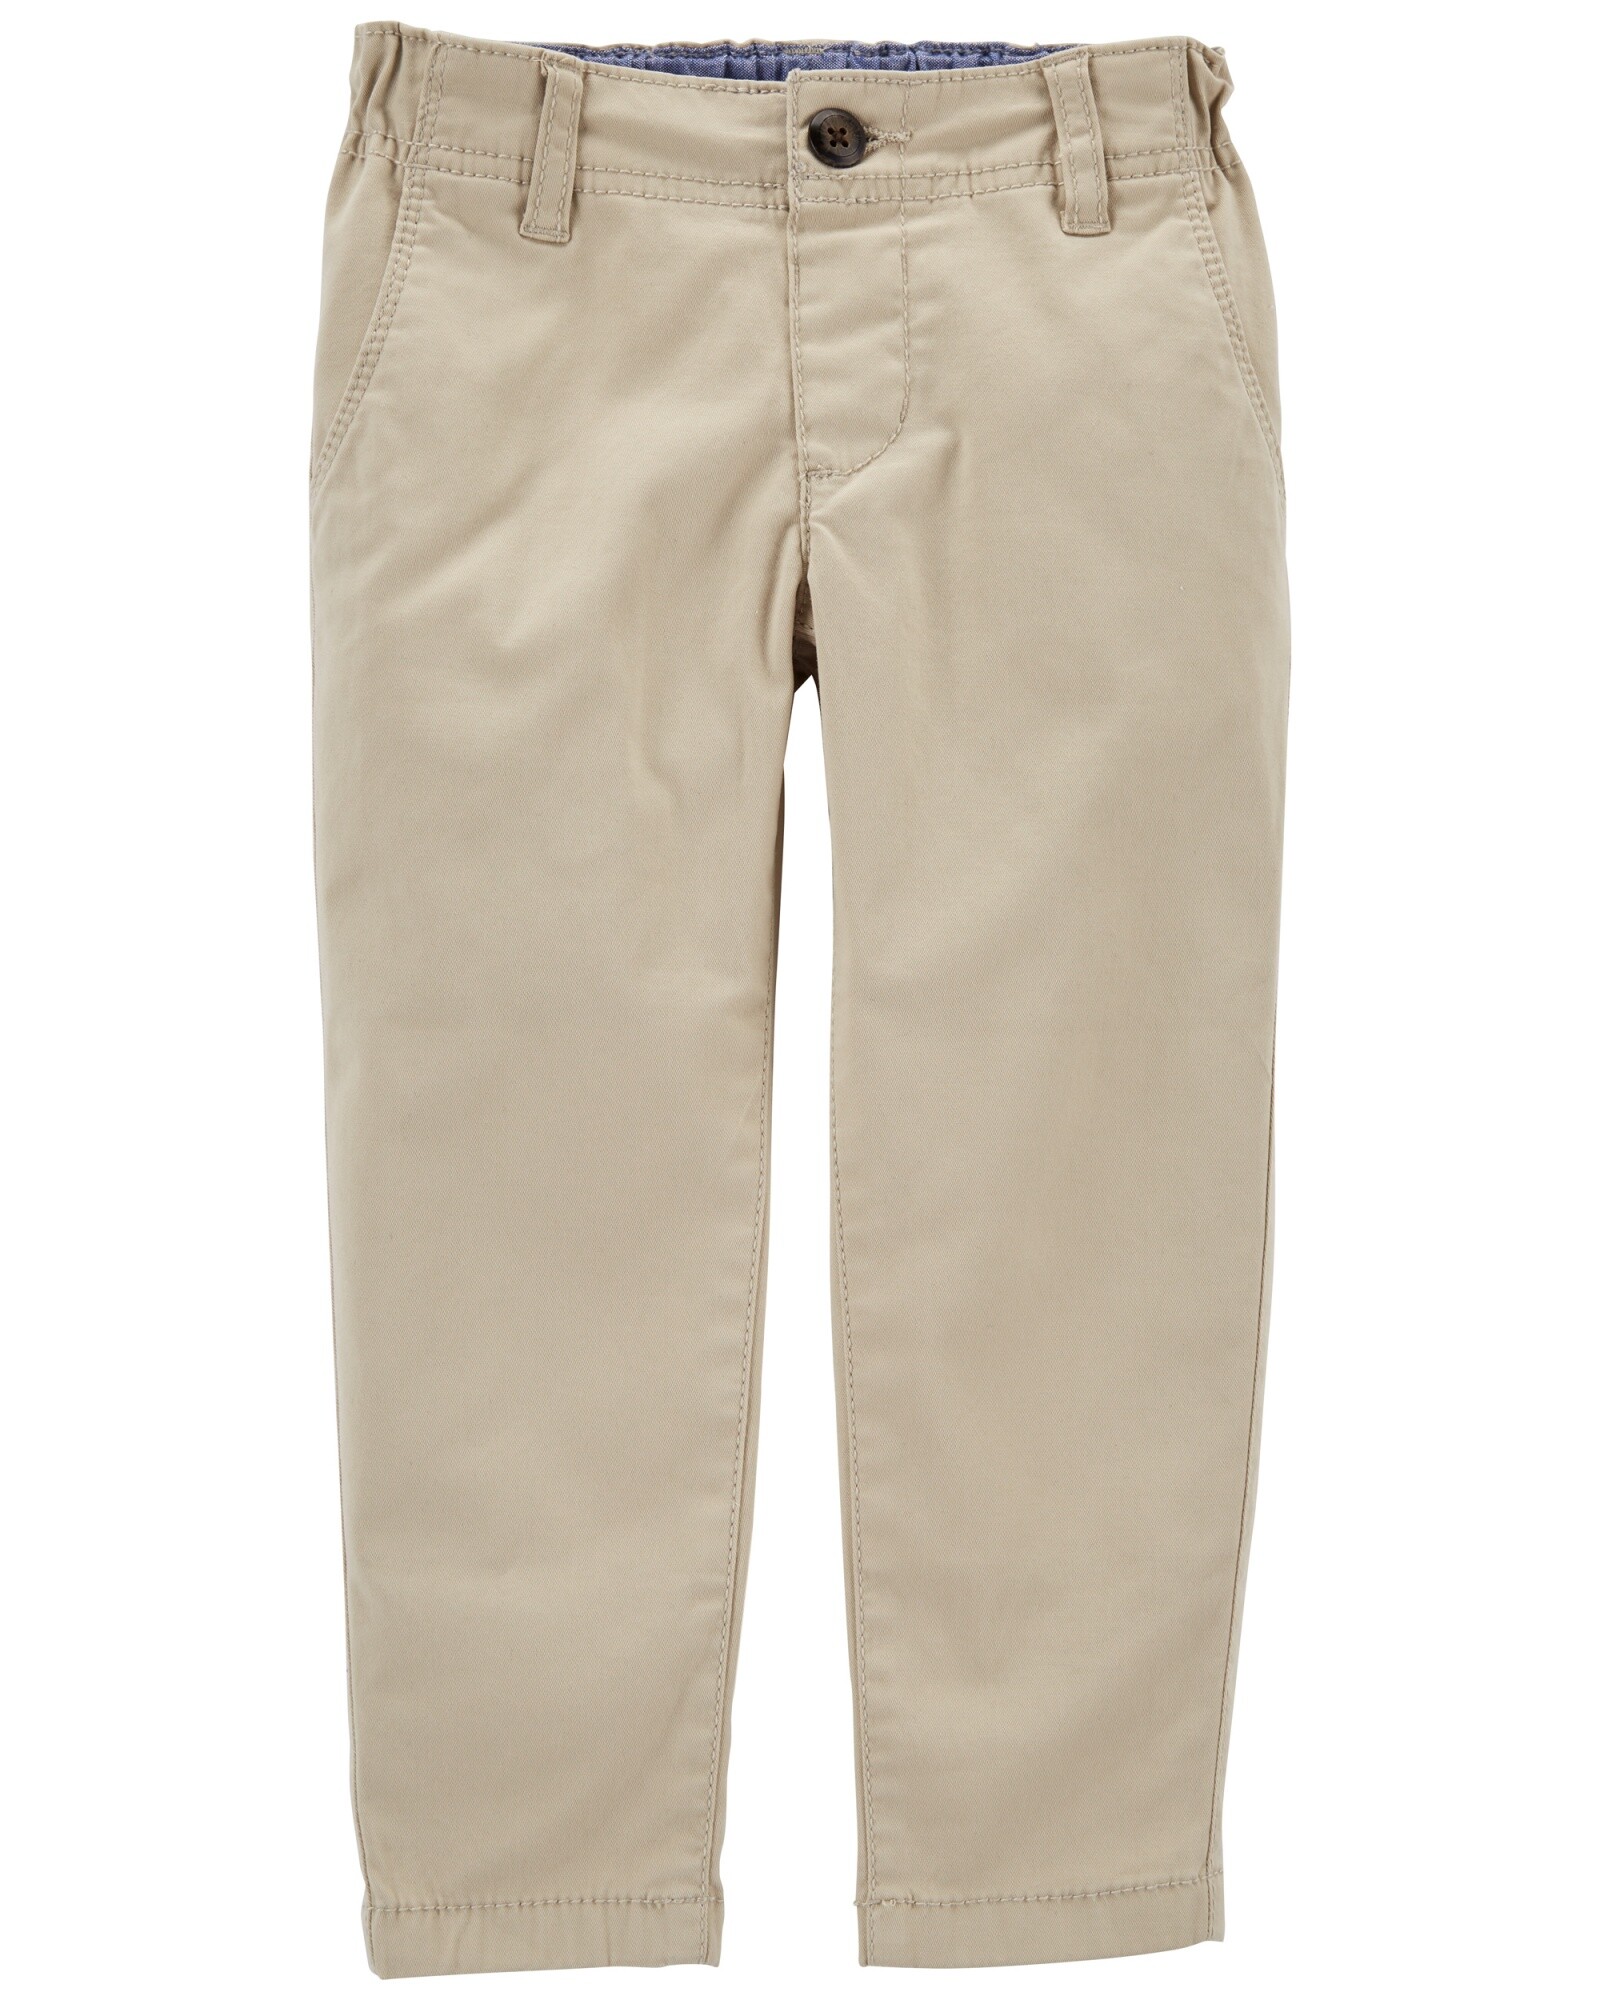 Pantalón de sarga clásico. Talles 2-5T Sin color